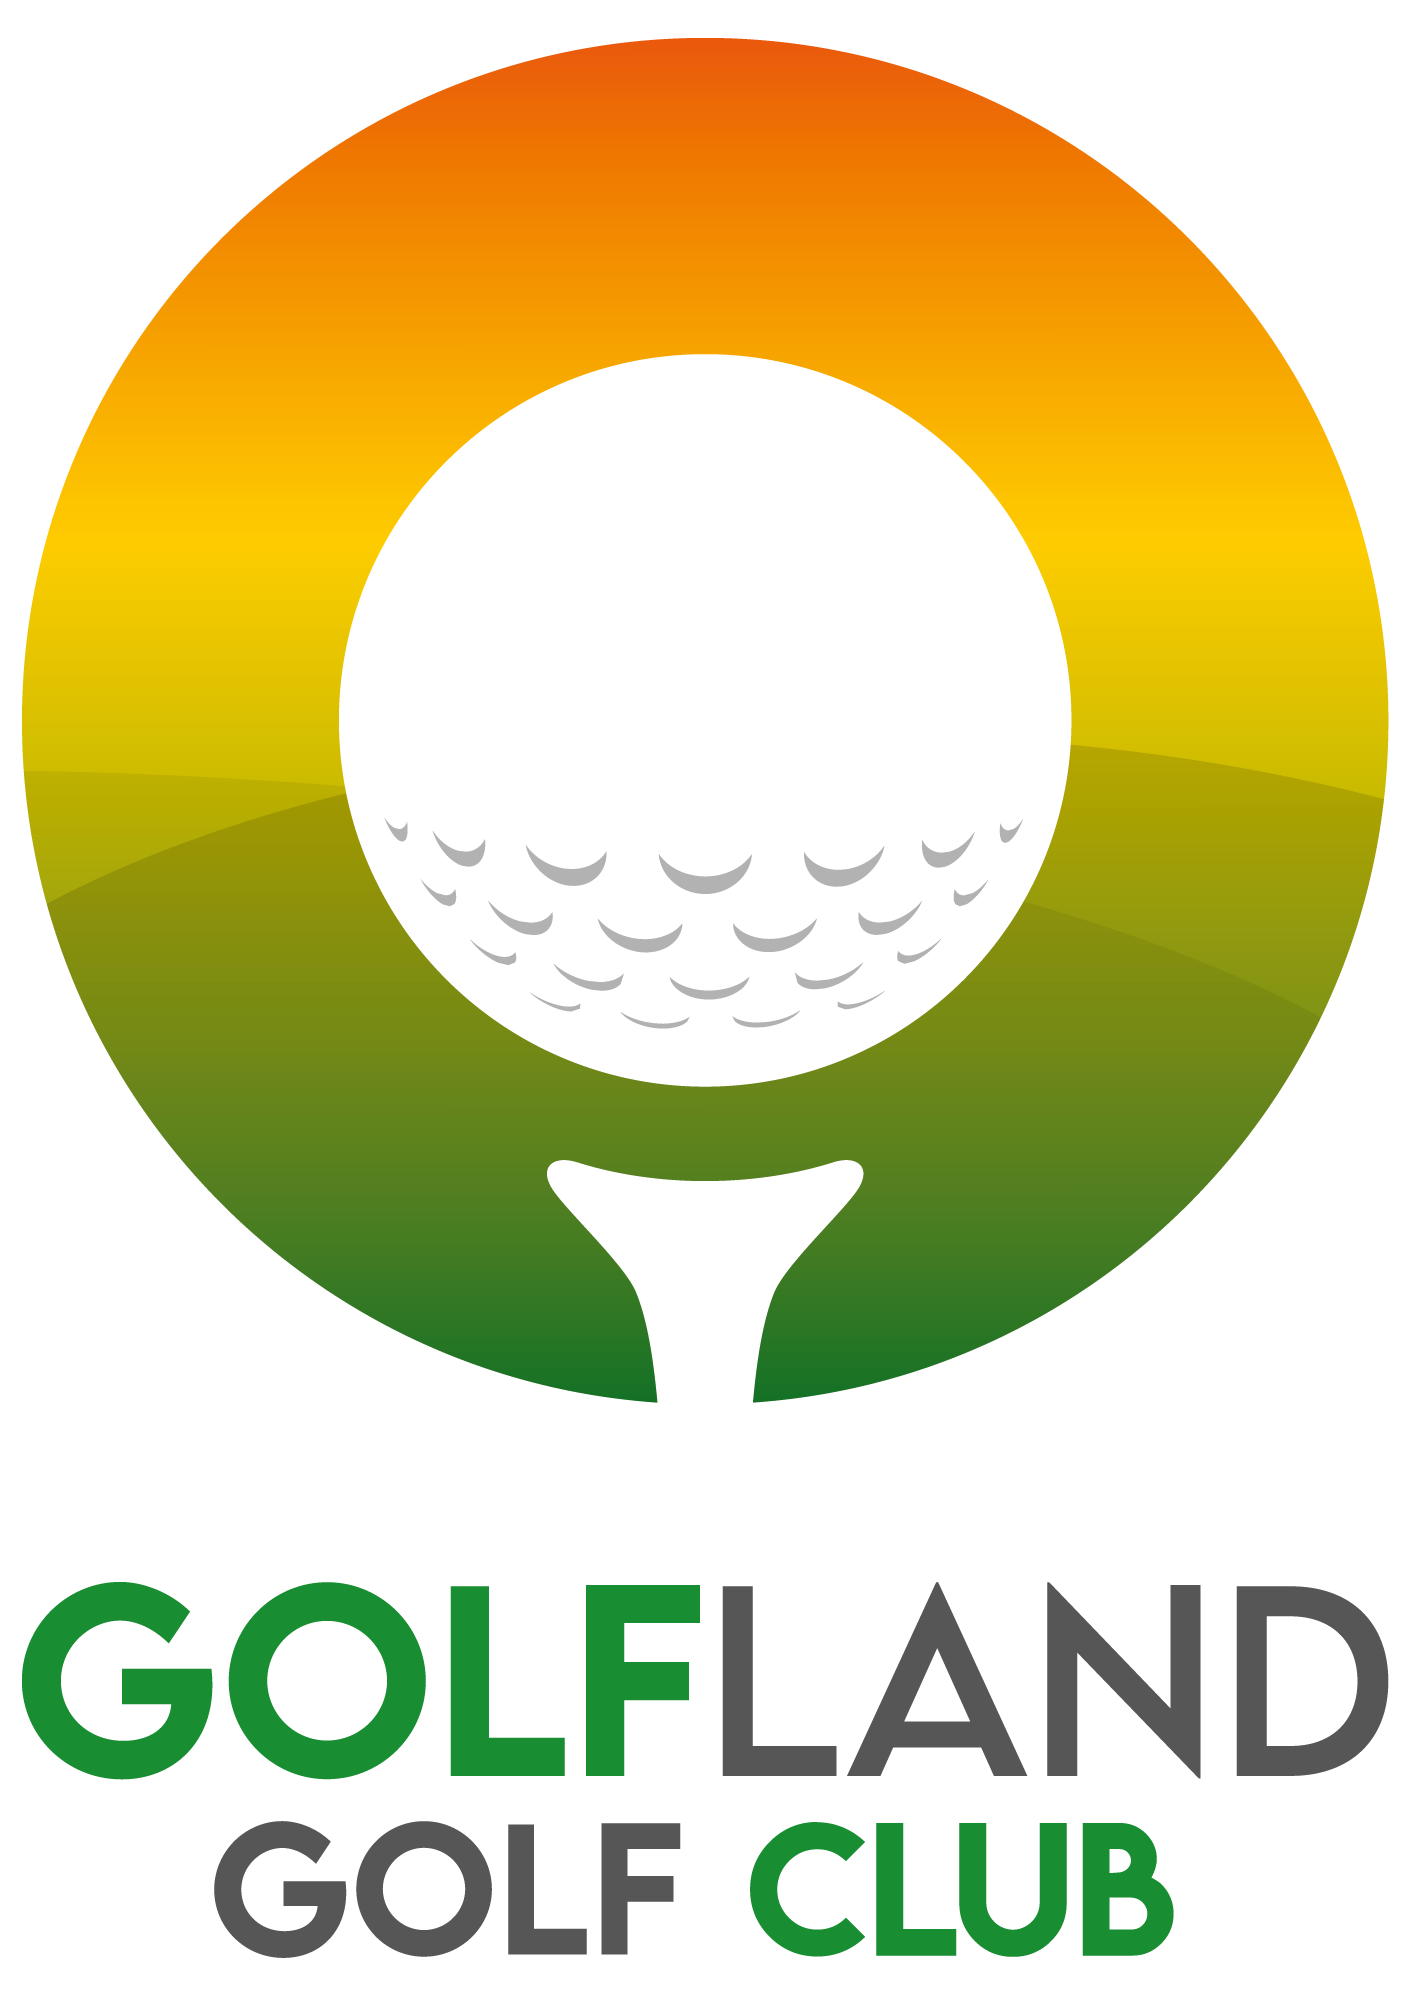 Golfland Golf Club